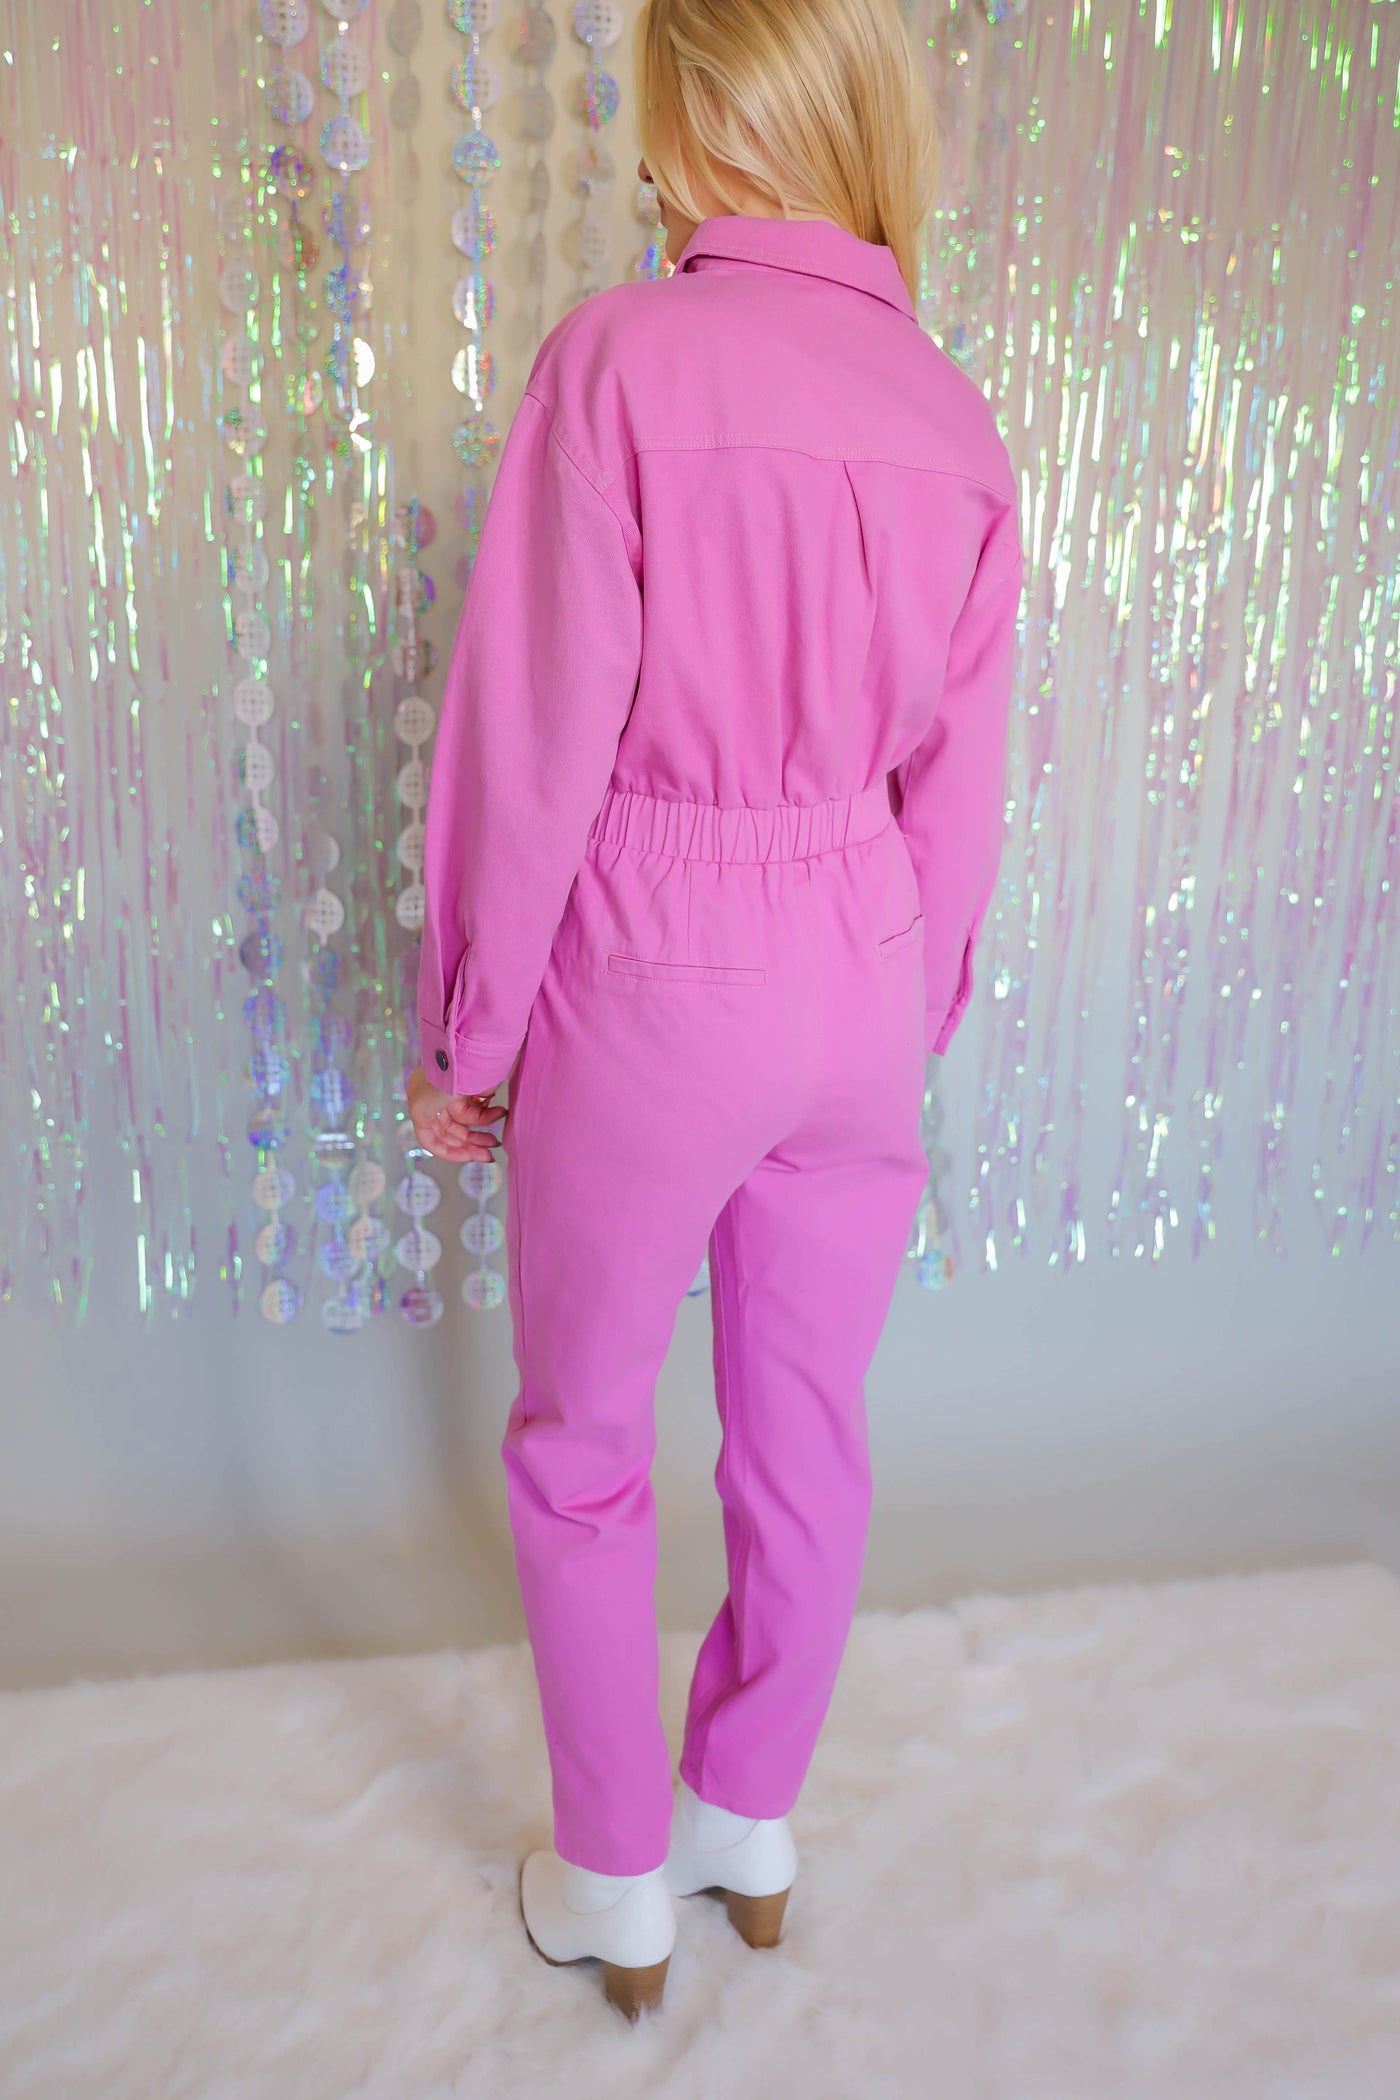 Pink Denim Jumpsuit- Long Sleeve Pink Jumpsuit- Women's Pink Utility Jumpsuit